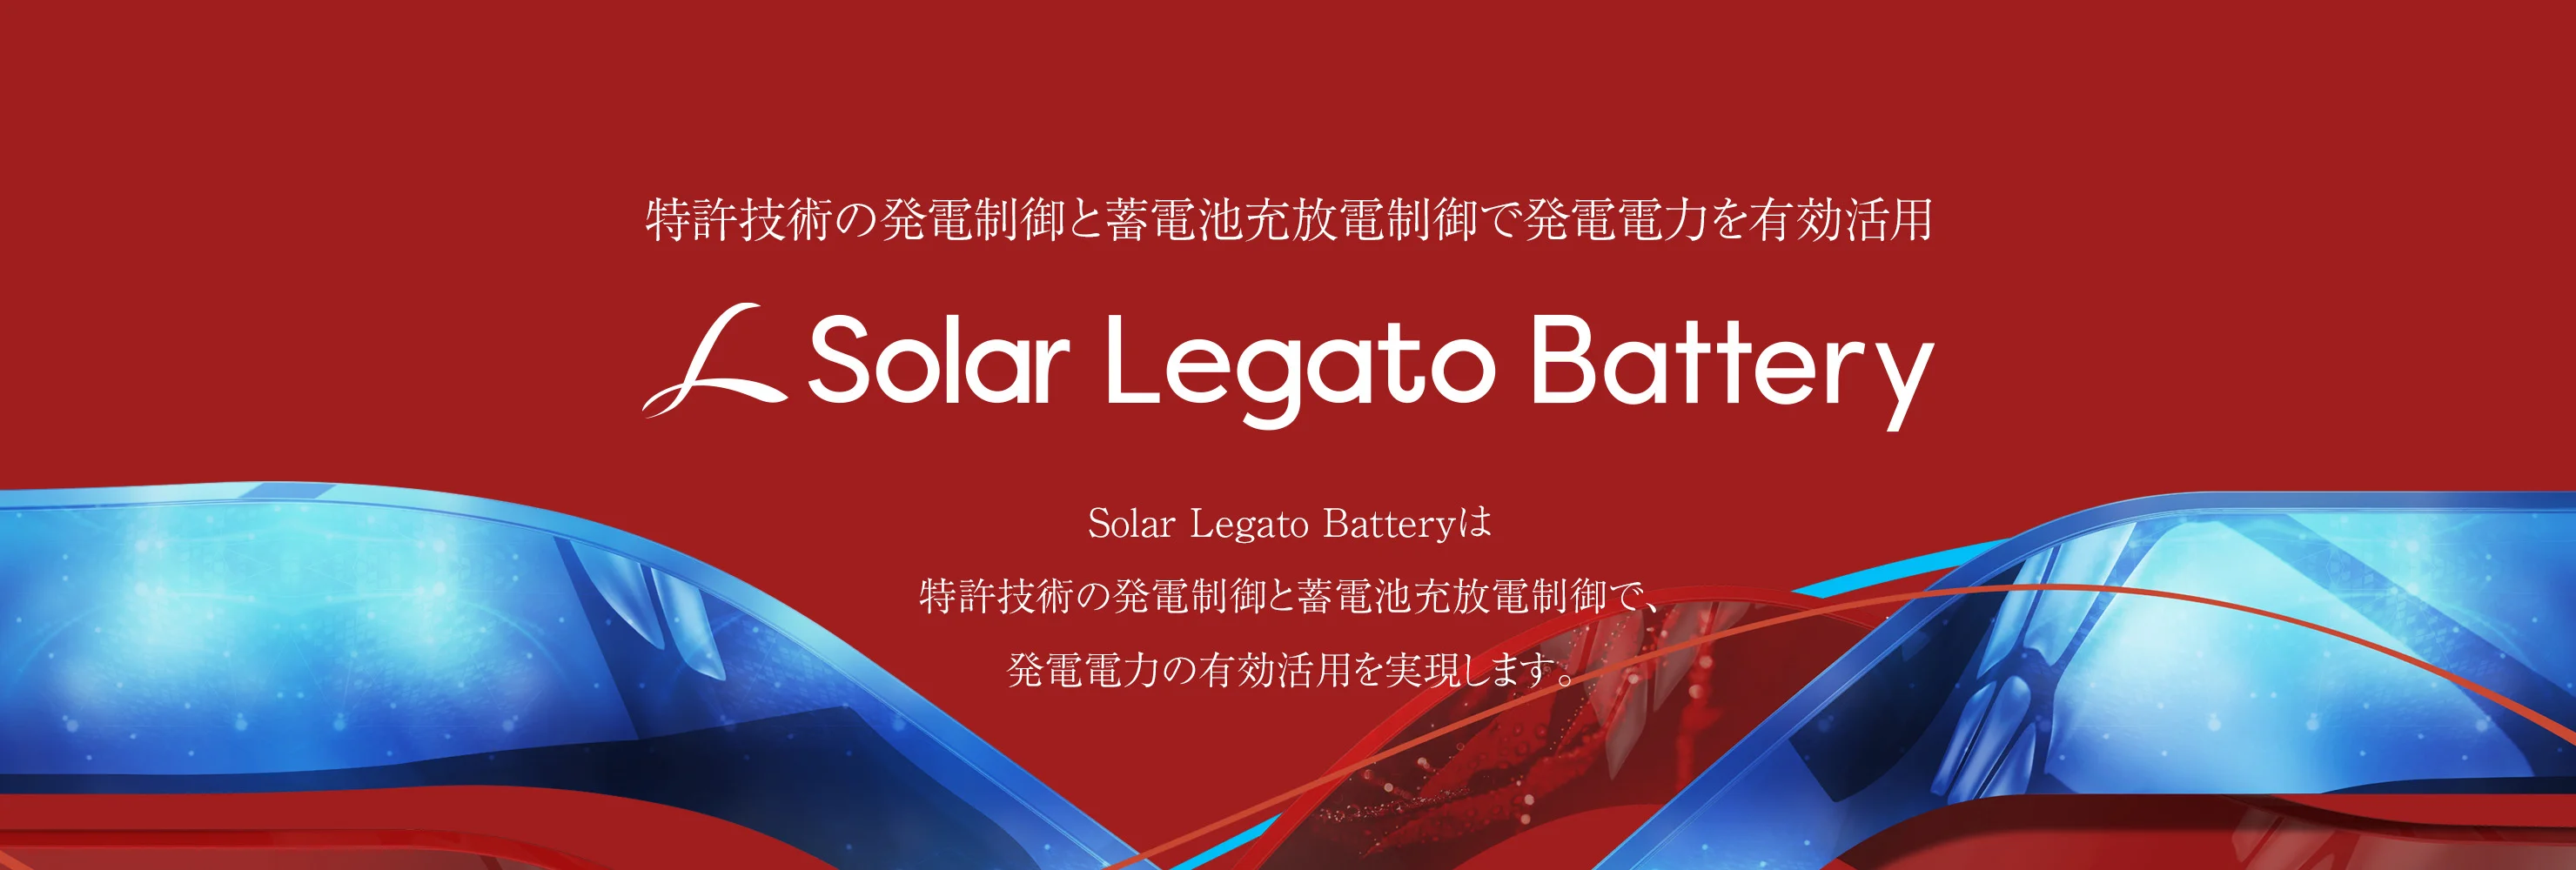 SolarLegatoBattery